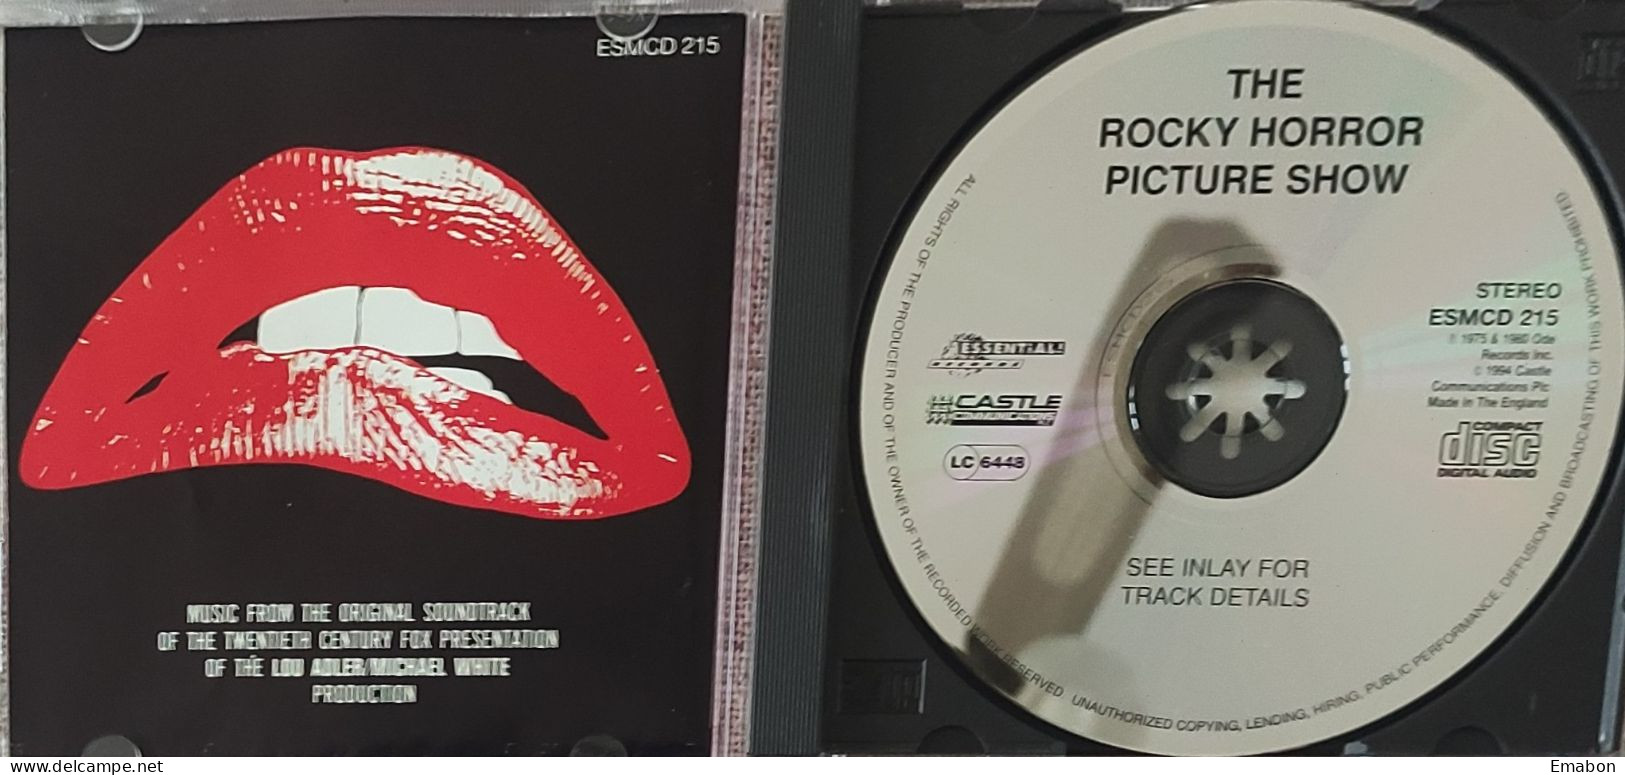 BORGATTA - FILM MUSIC  - Cd - THE ROCKY HORROR PICTURE SHOW - ESSENTIAL RECORDS 1994- USATO In Buono Stato - Filmmusik